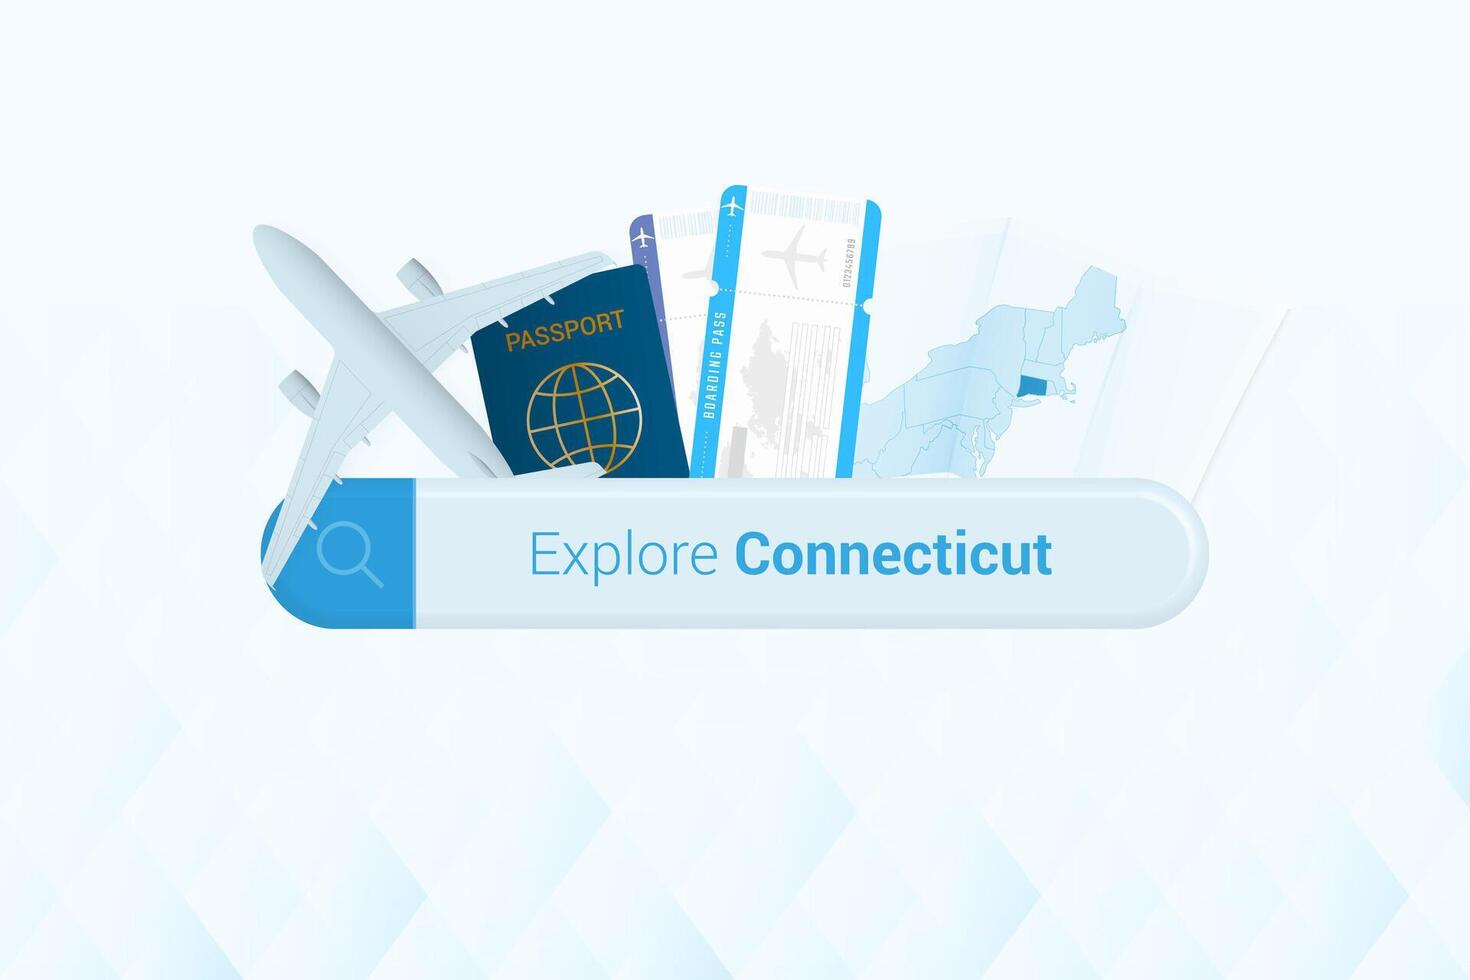 suchen Tickets zu Connecticut oder Reise Ziel im Connecticut. suchen Bar mit Flugzeug, Reisepass, Einsteigen passieren, Tickets und Karte. vektor